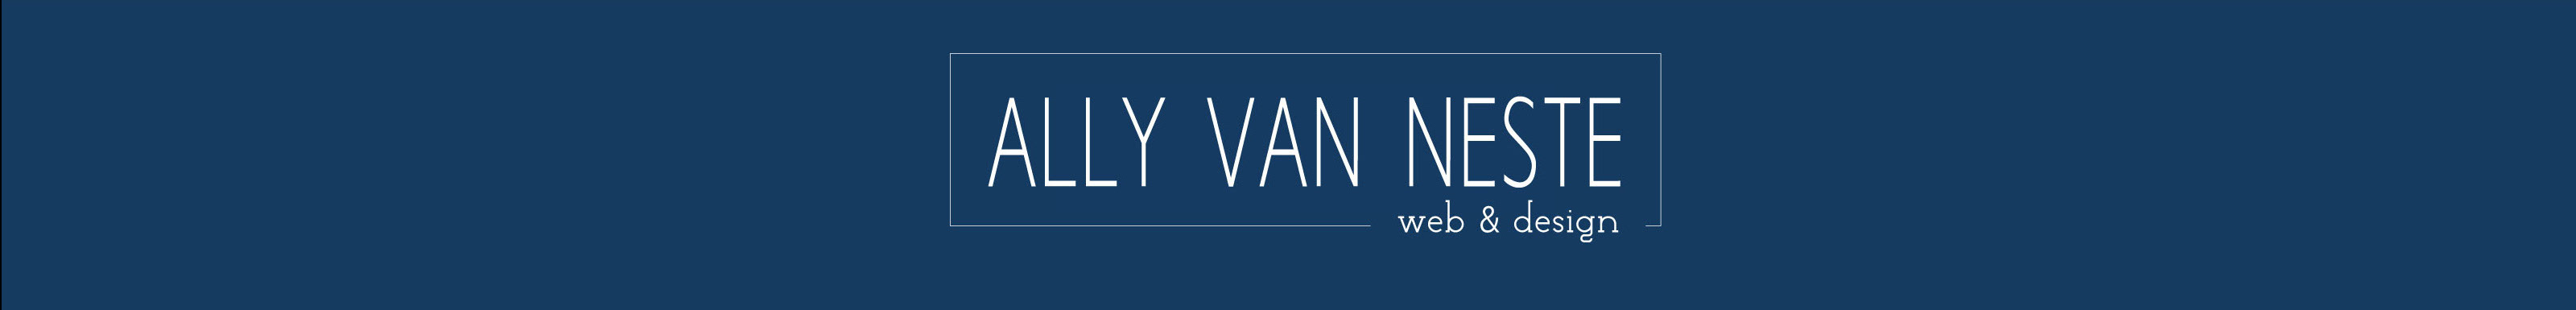 Ally Van Neste's profile banner